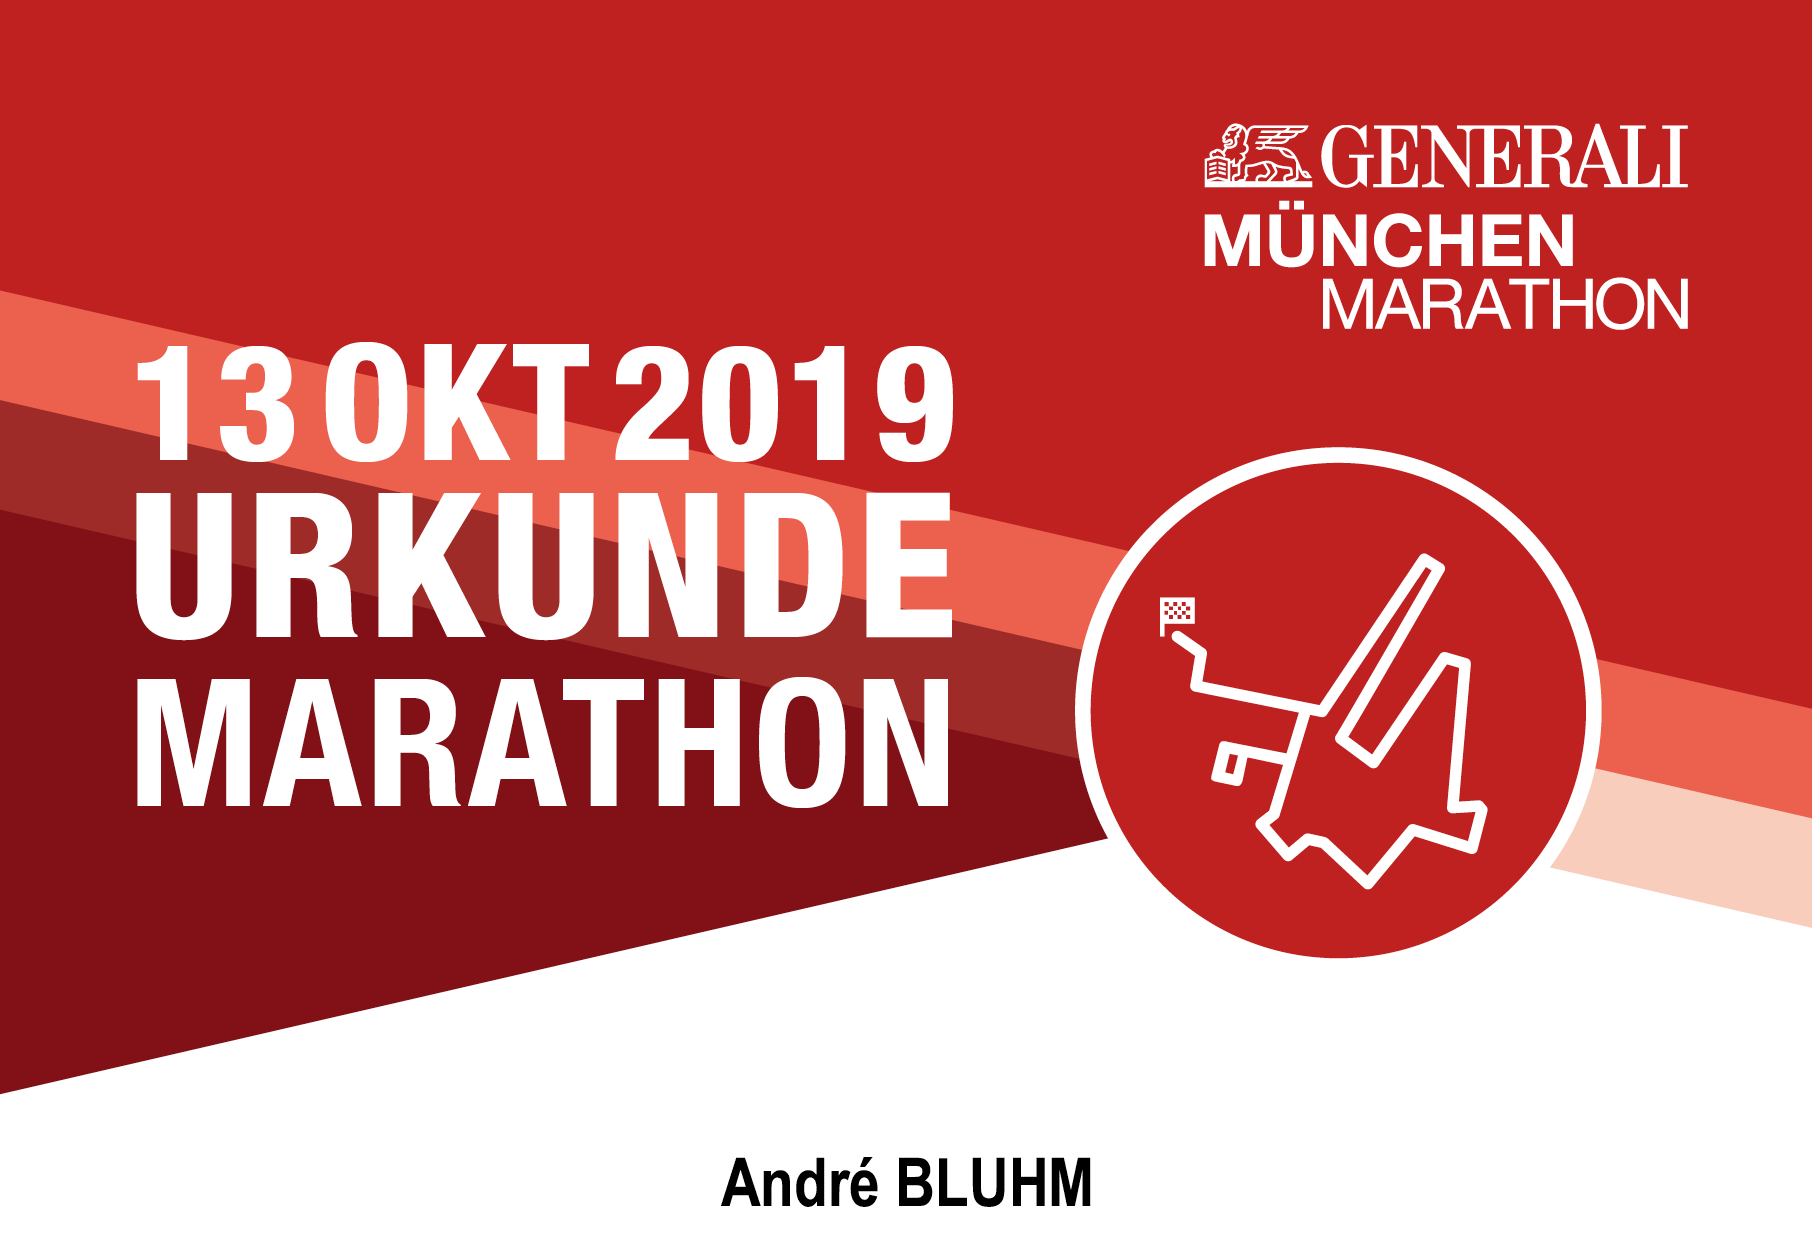 Generali Munich Marathon